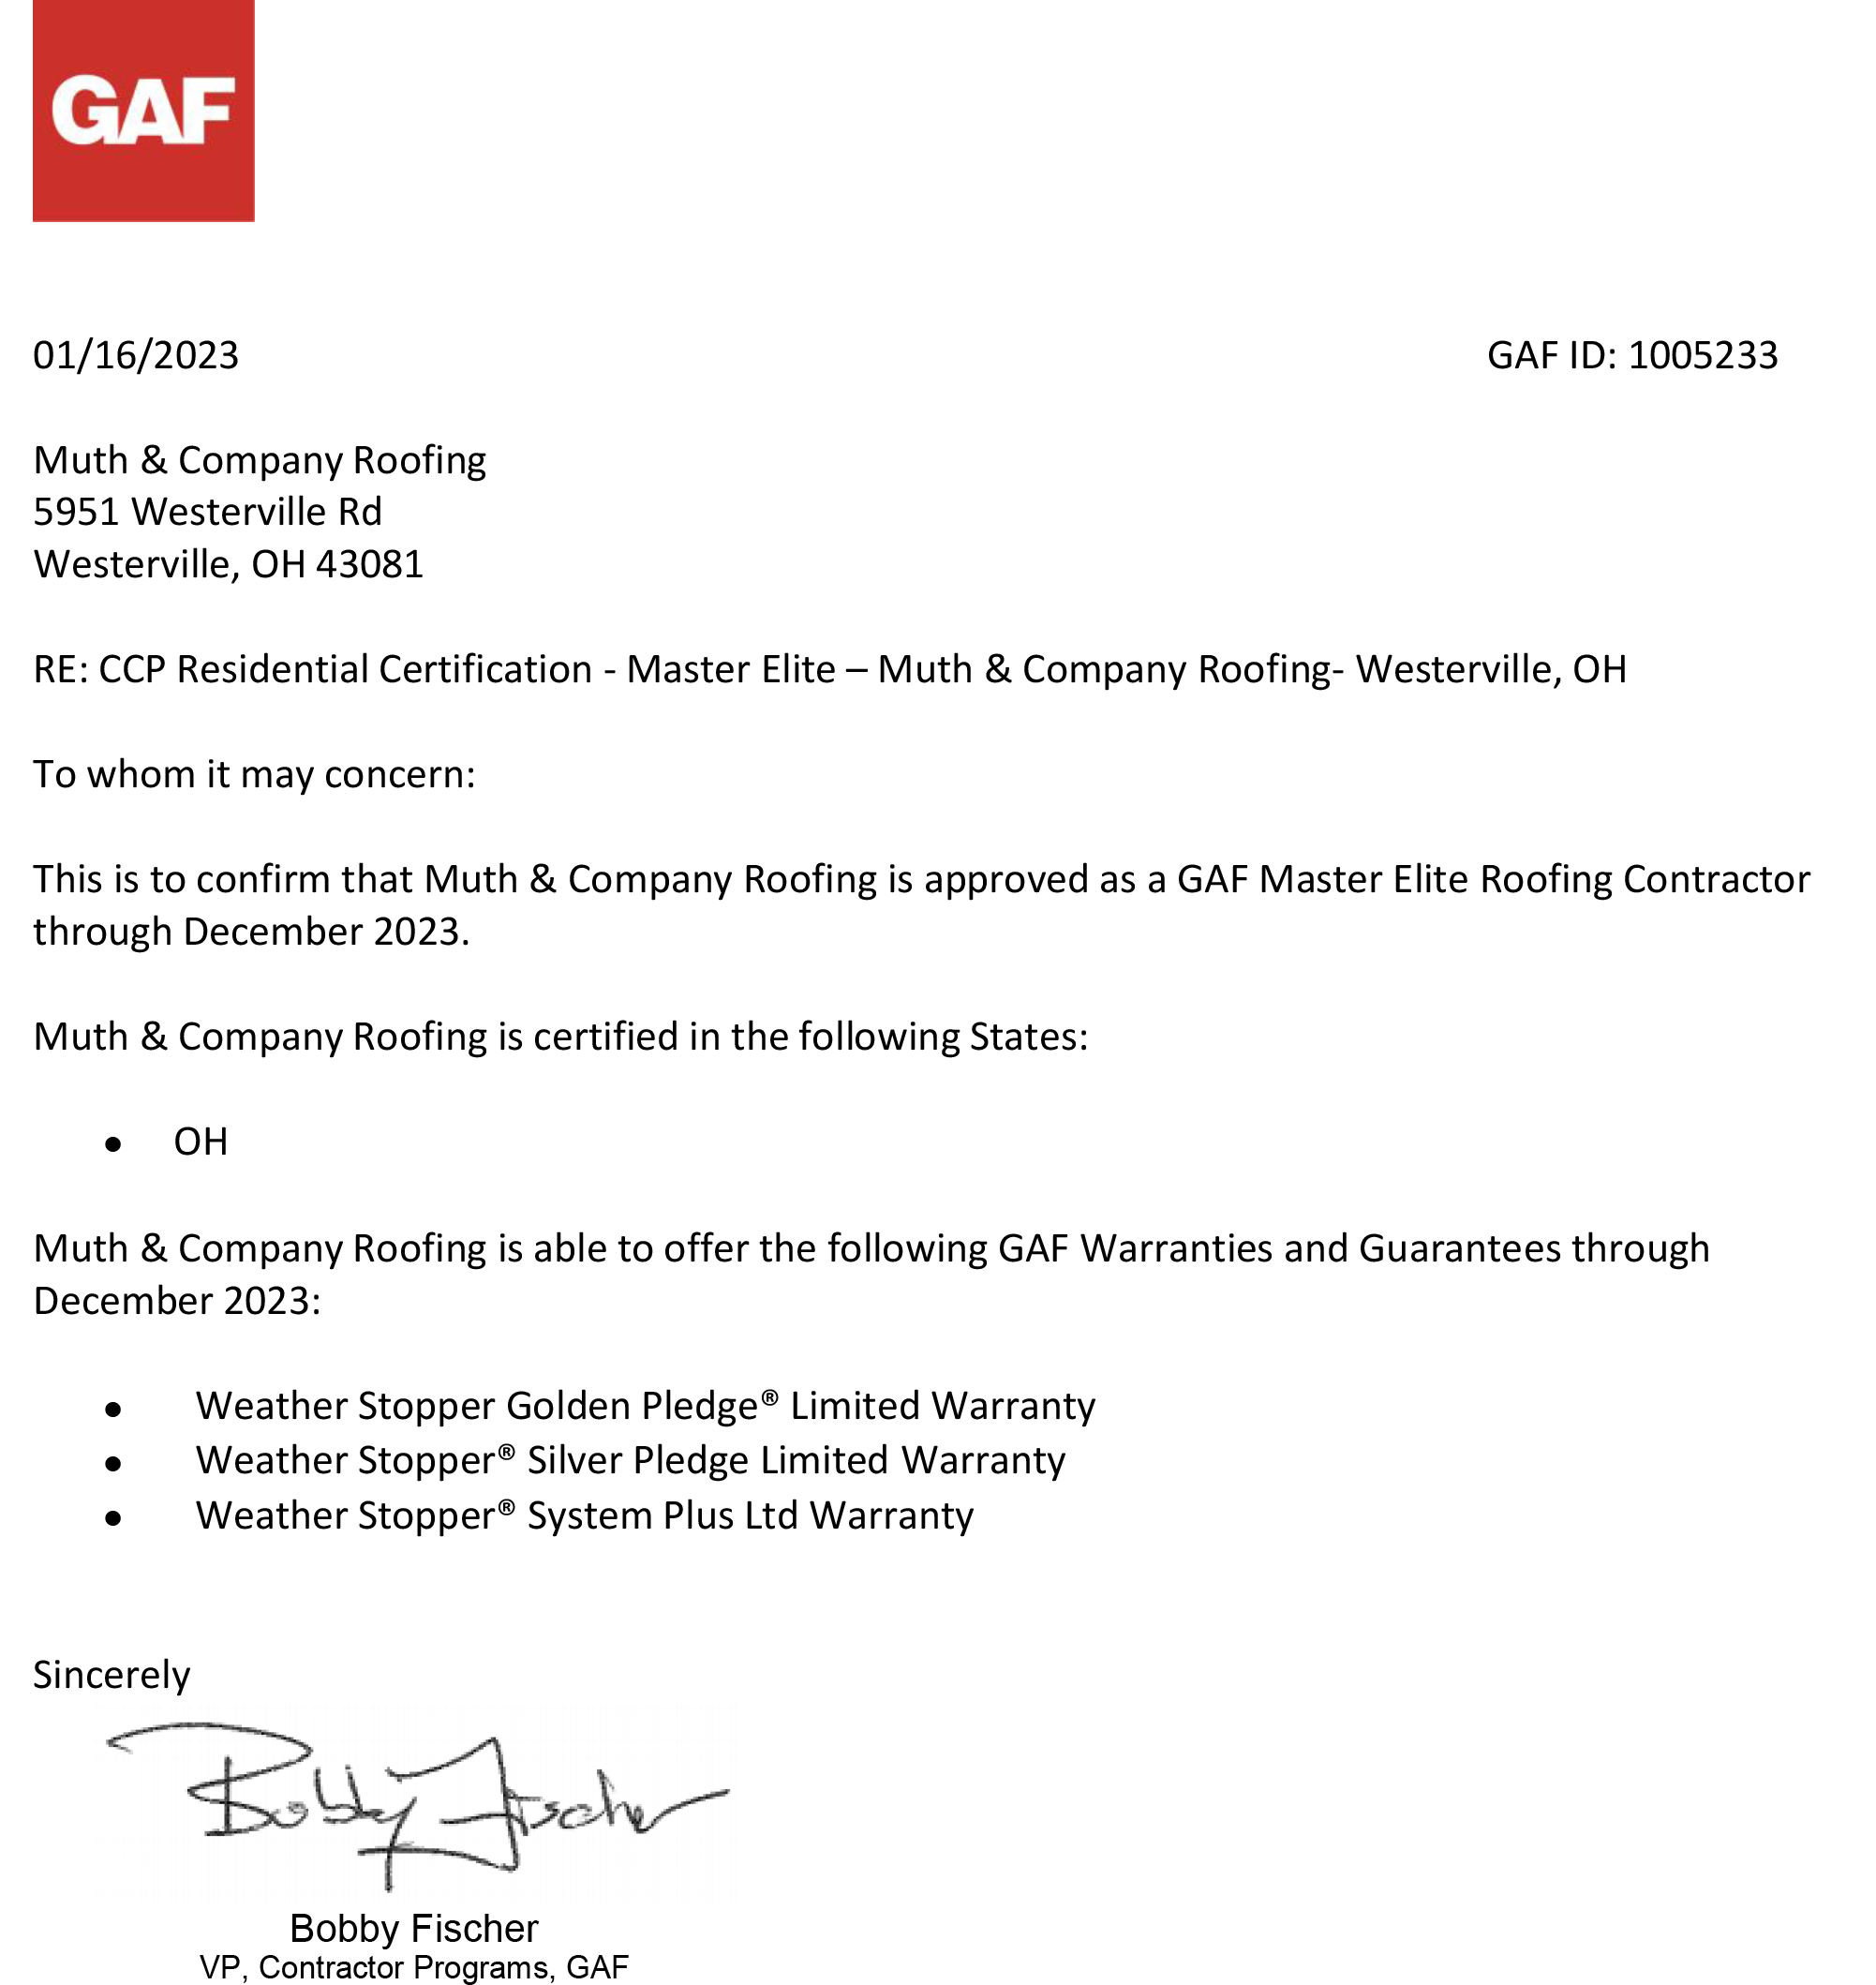 2016-GAF-Master-Elite-Certificate-page-001-compressor